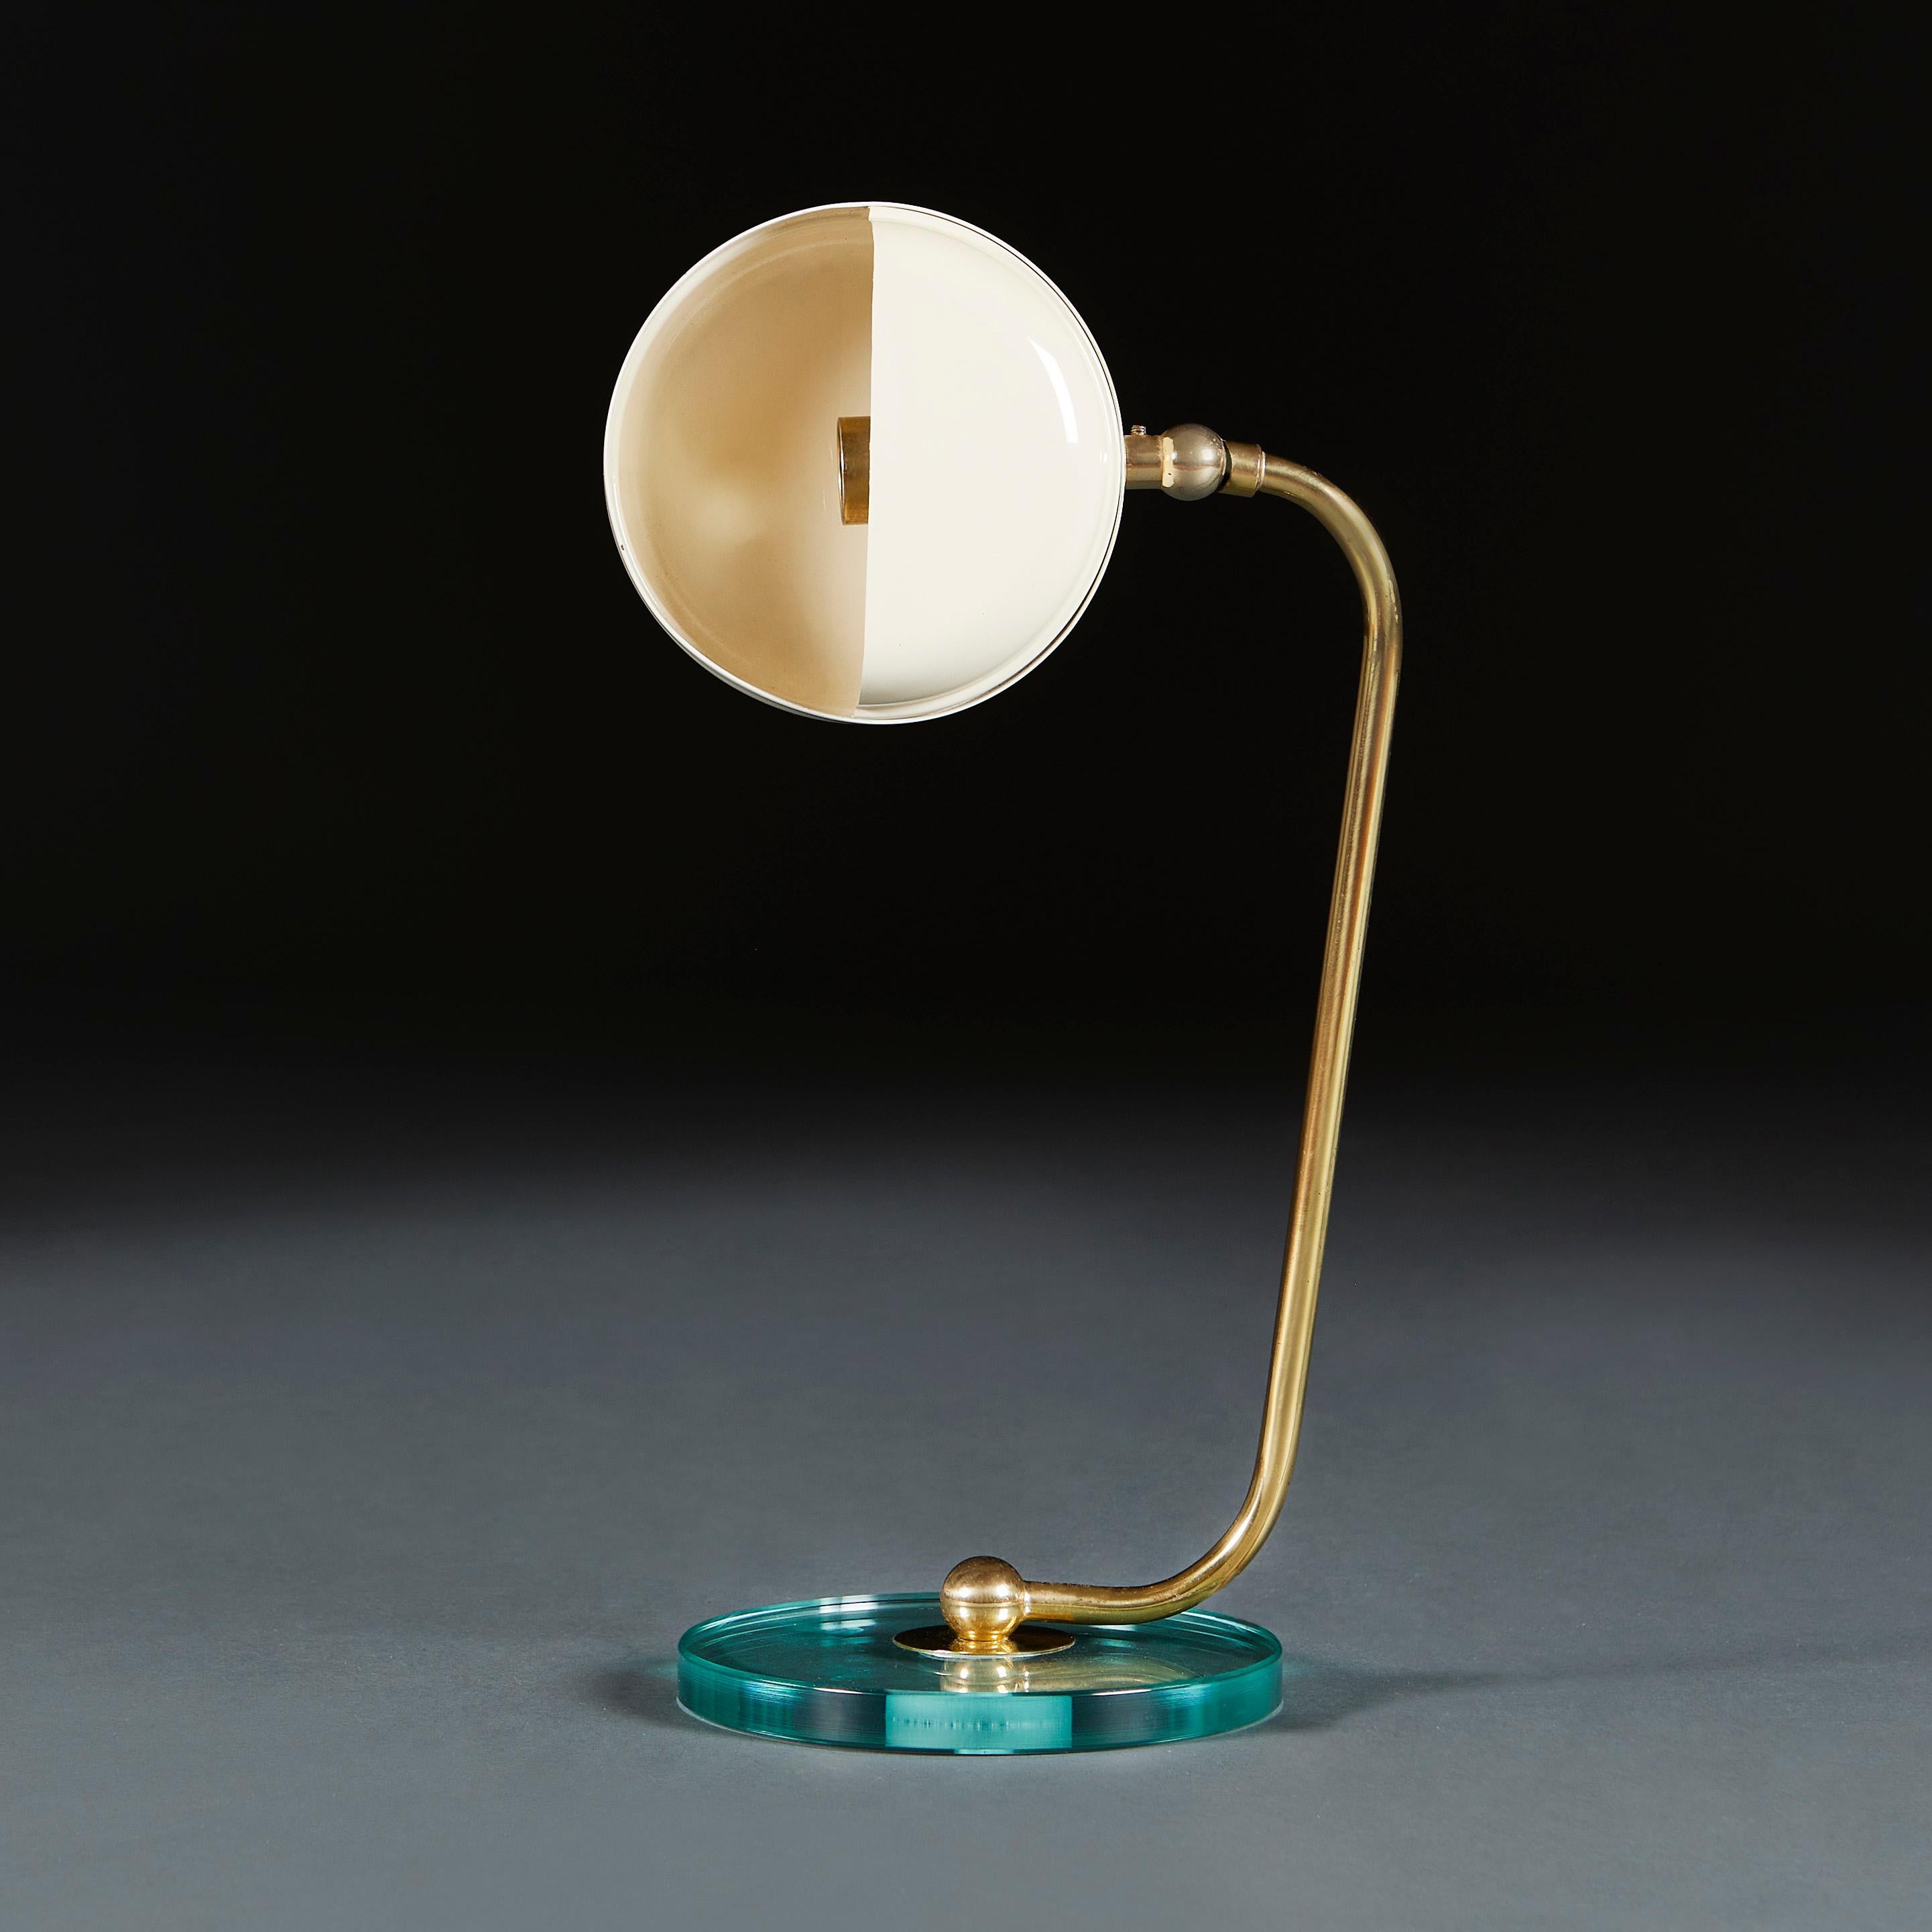 Italian Fontana Arte Articulated Desk Lamp